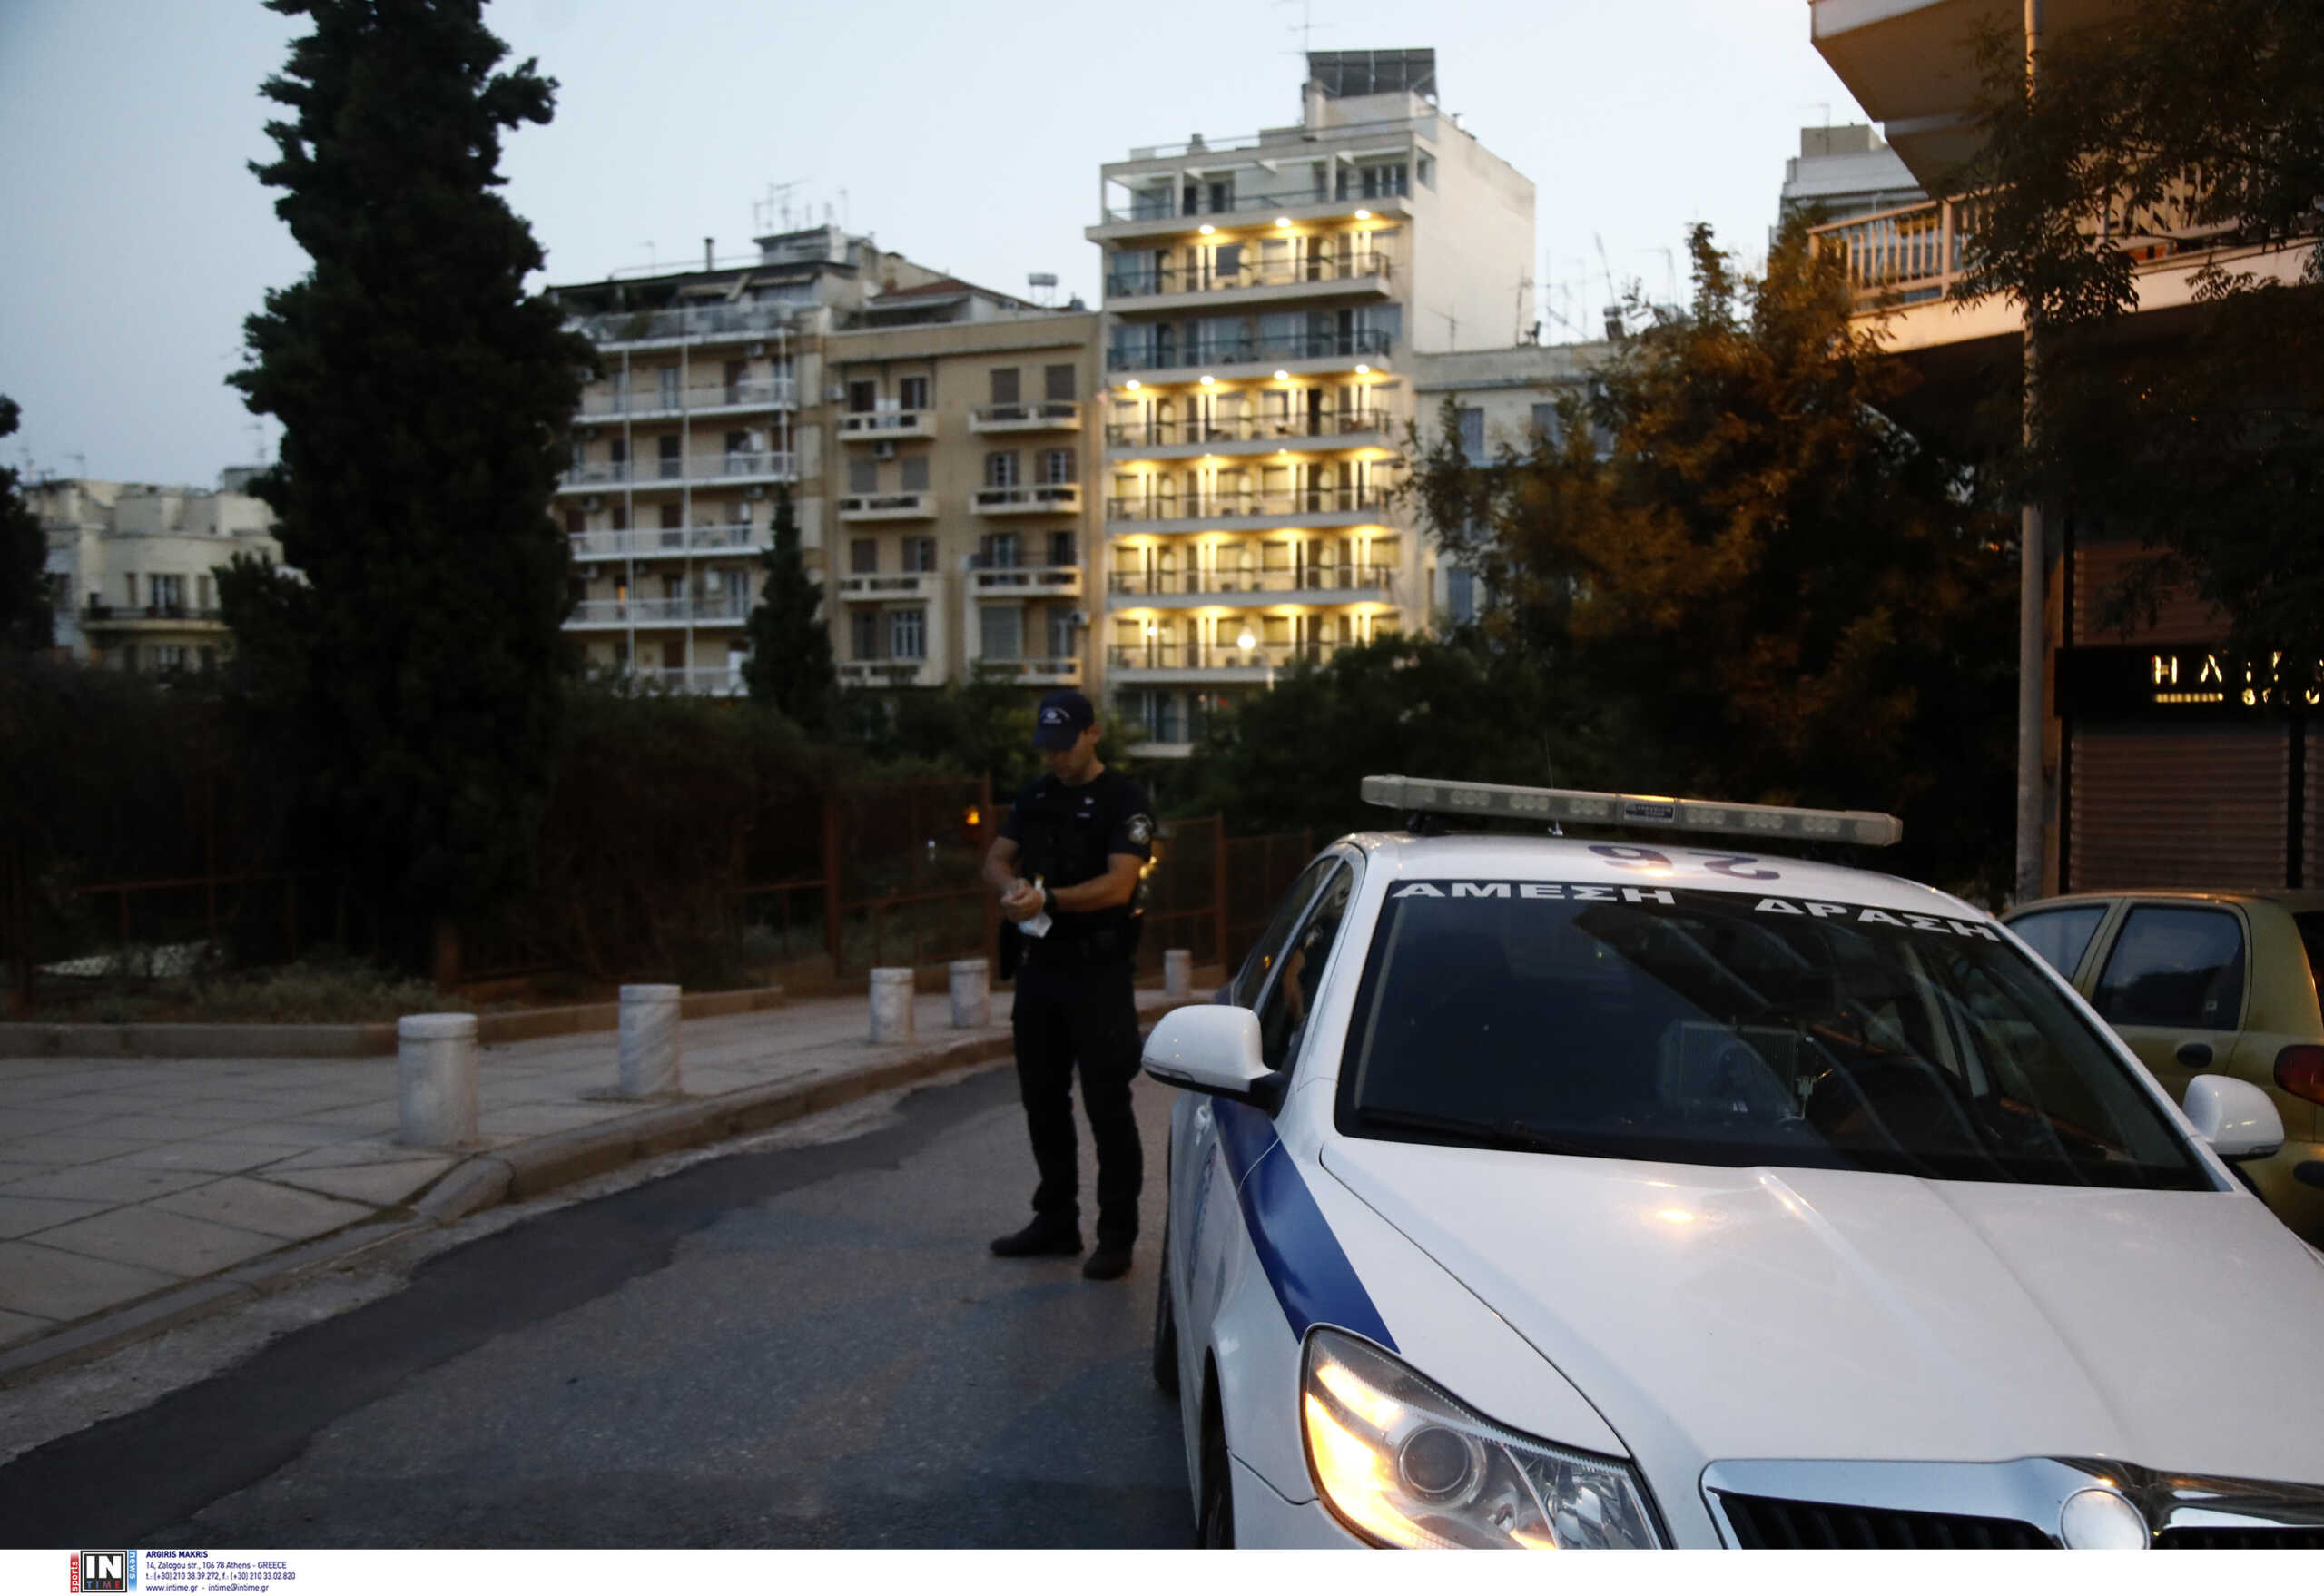 Θεσσαλονίκη: Τέσσερις συλλήψεις για αποδοχή και διάθεση προϊόντων εγκλήματος – Πιάστηκαν με οκτώ ράβδους χρυσού και κοσμήματα